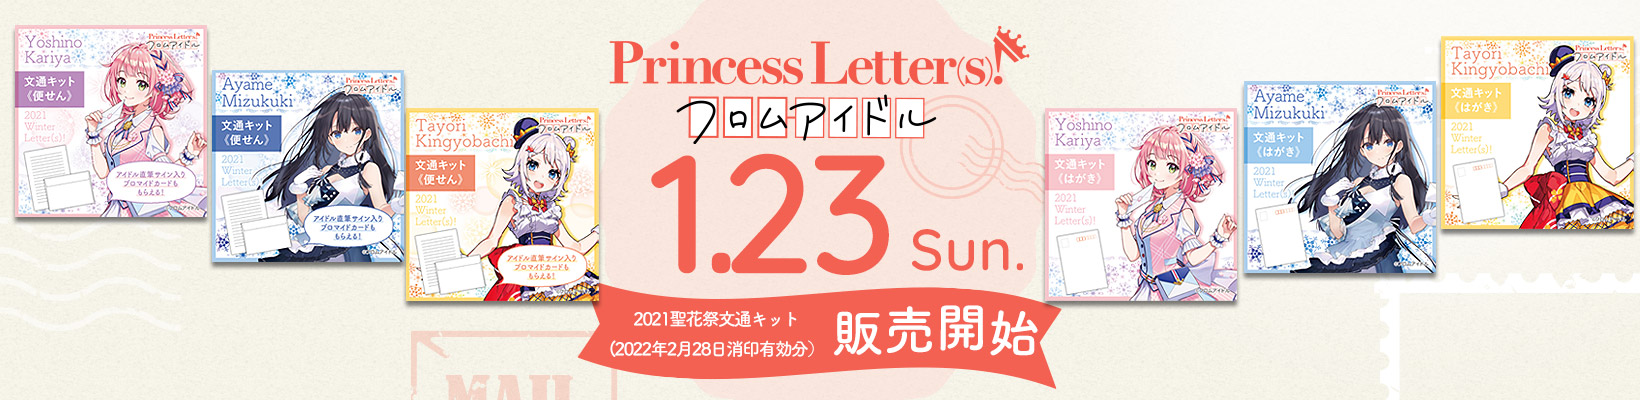 Princess Letter(s)!フロムアイドル 1.23wed. 販売開始!